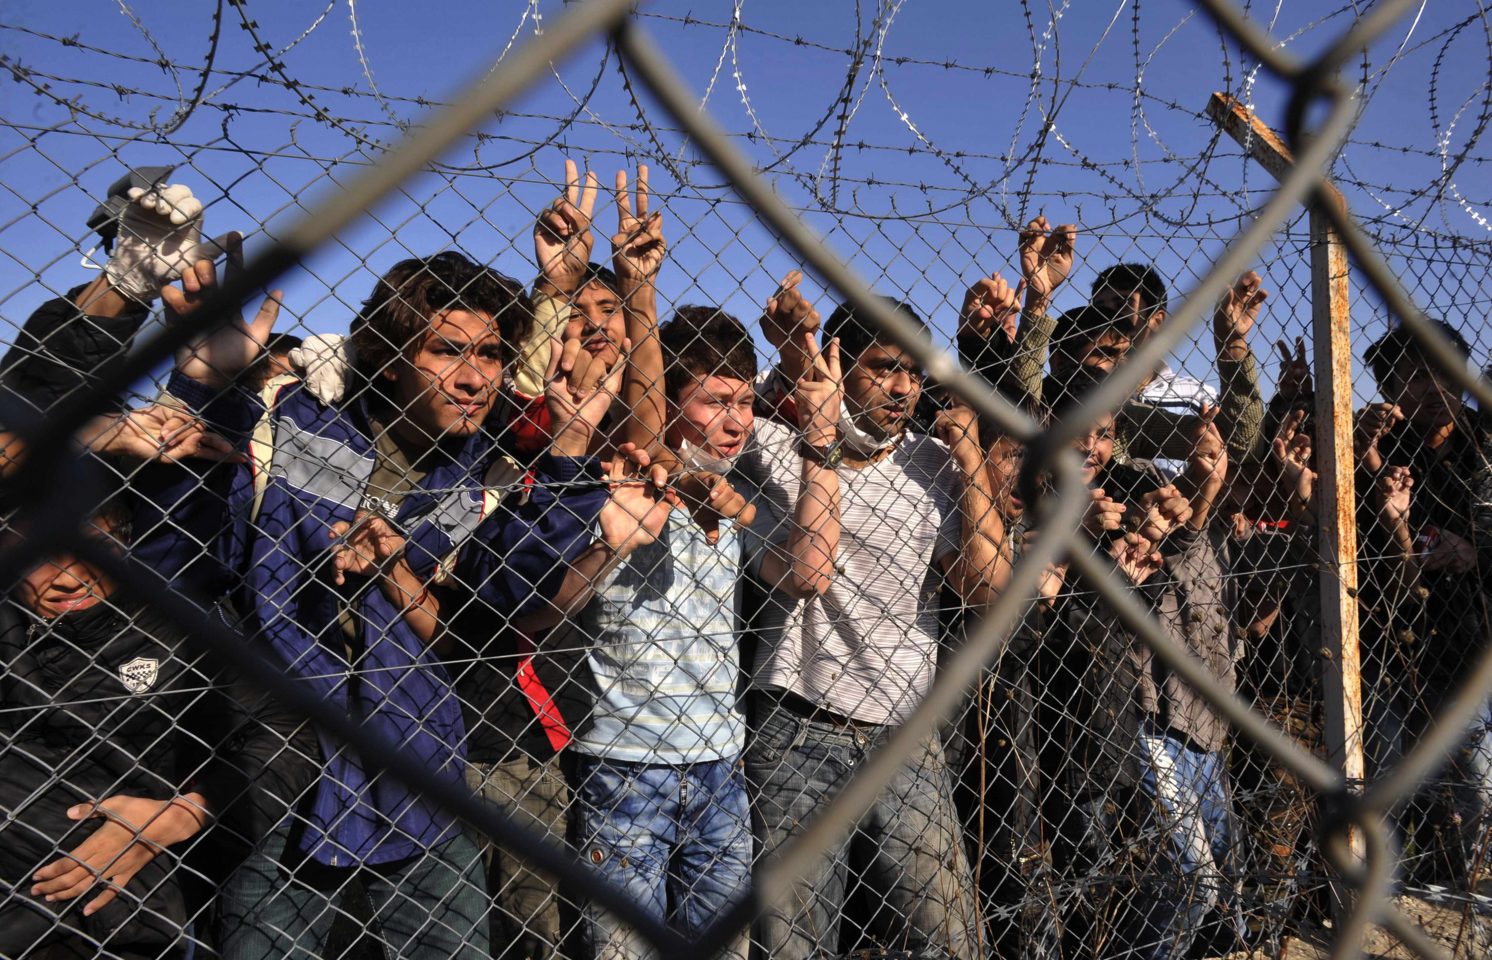 Ουγγαρία: Καταδίκη Συροκύπριου ως τρομοκράτη που παρακινούσε παράνομους μετανάστες